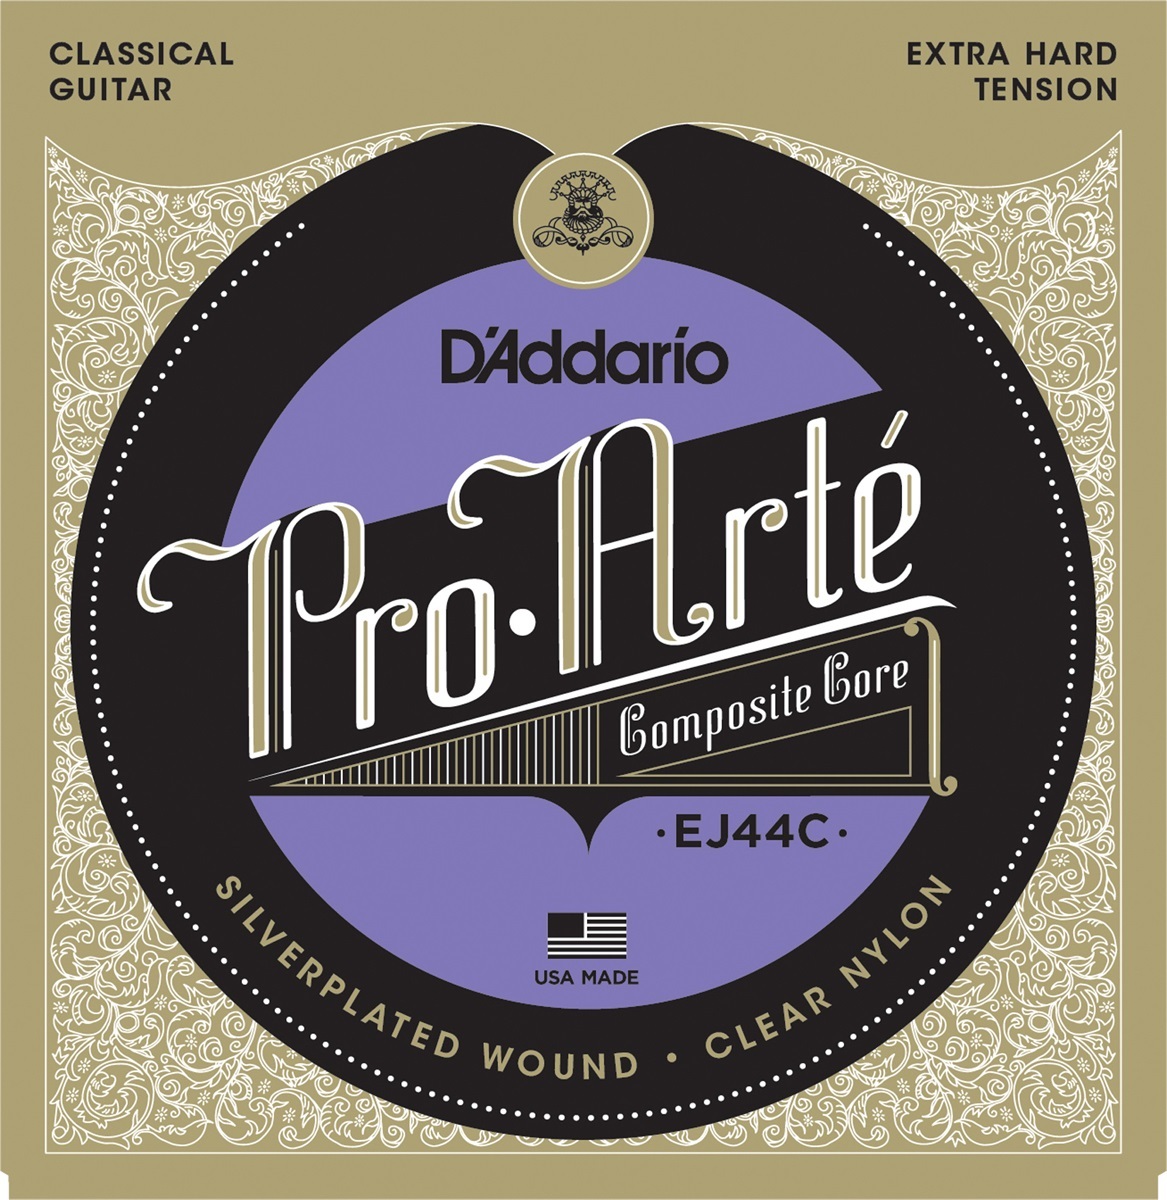 D'addario Jeu De 6 Cordes Ej44c Pro Arte Classical Composite Core - Extra Hard Tension - Nylonsnaren voor klassieke gitaar - Main picture